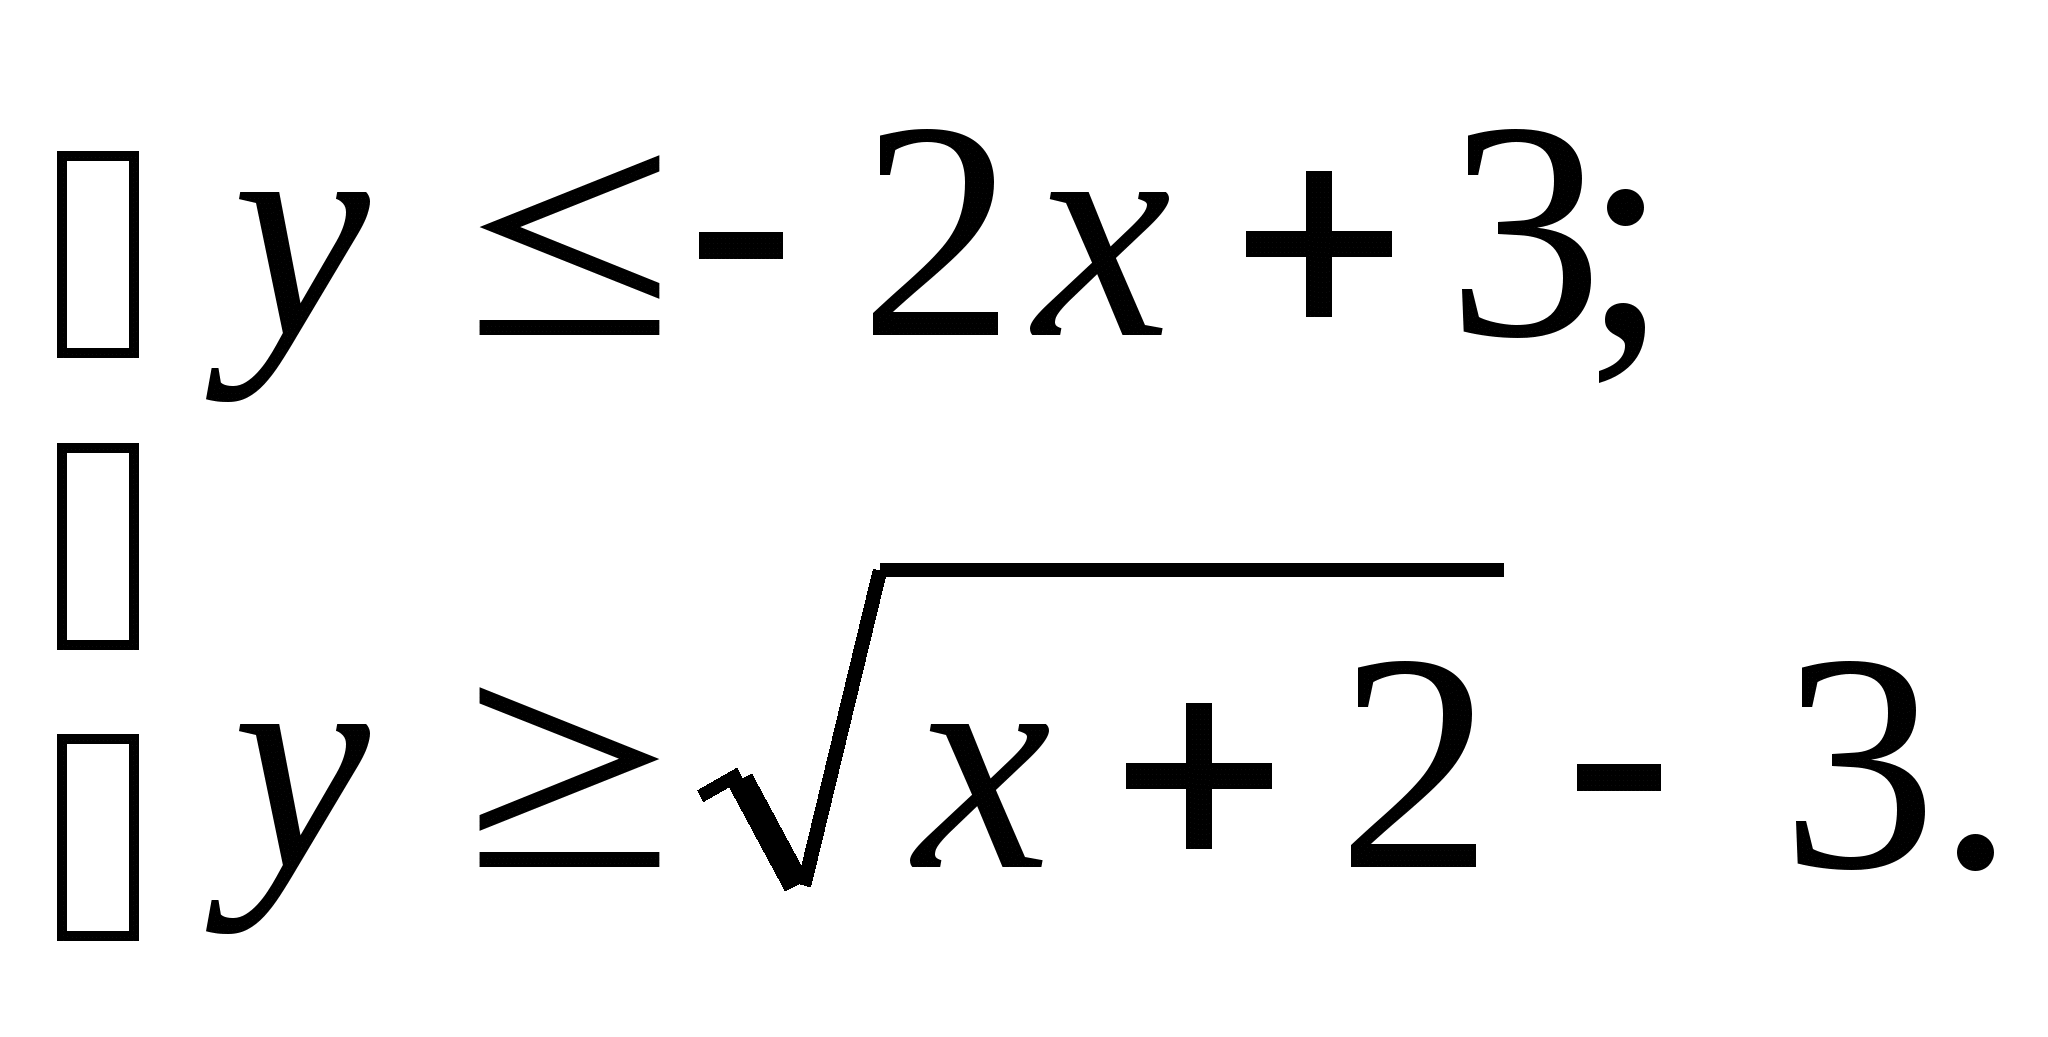 Конспект урока по математике на тему Решение неравенств и систем неравенств с двумя переменными